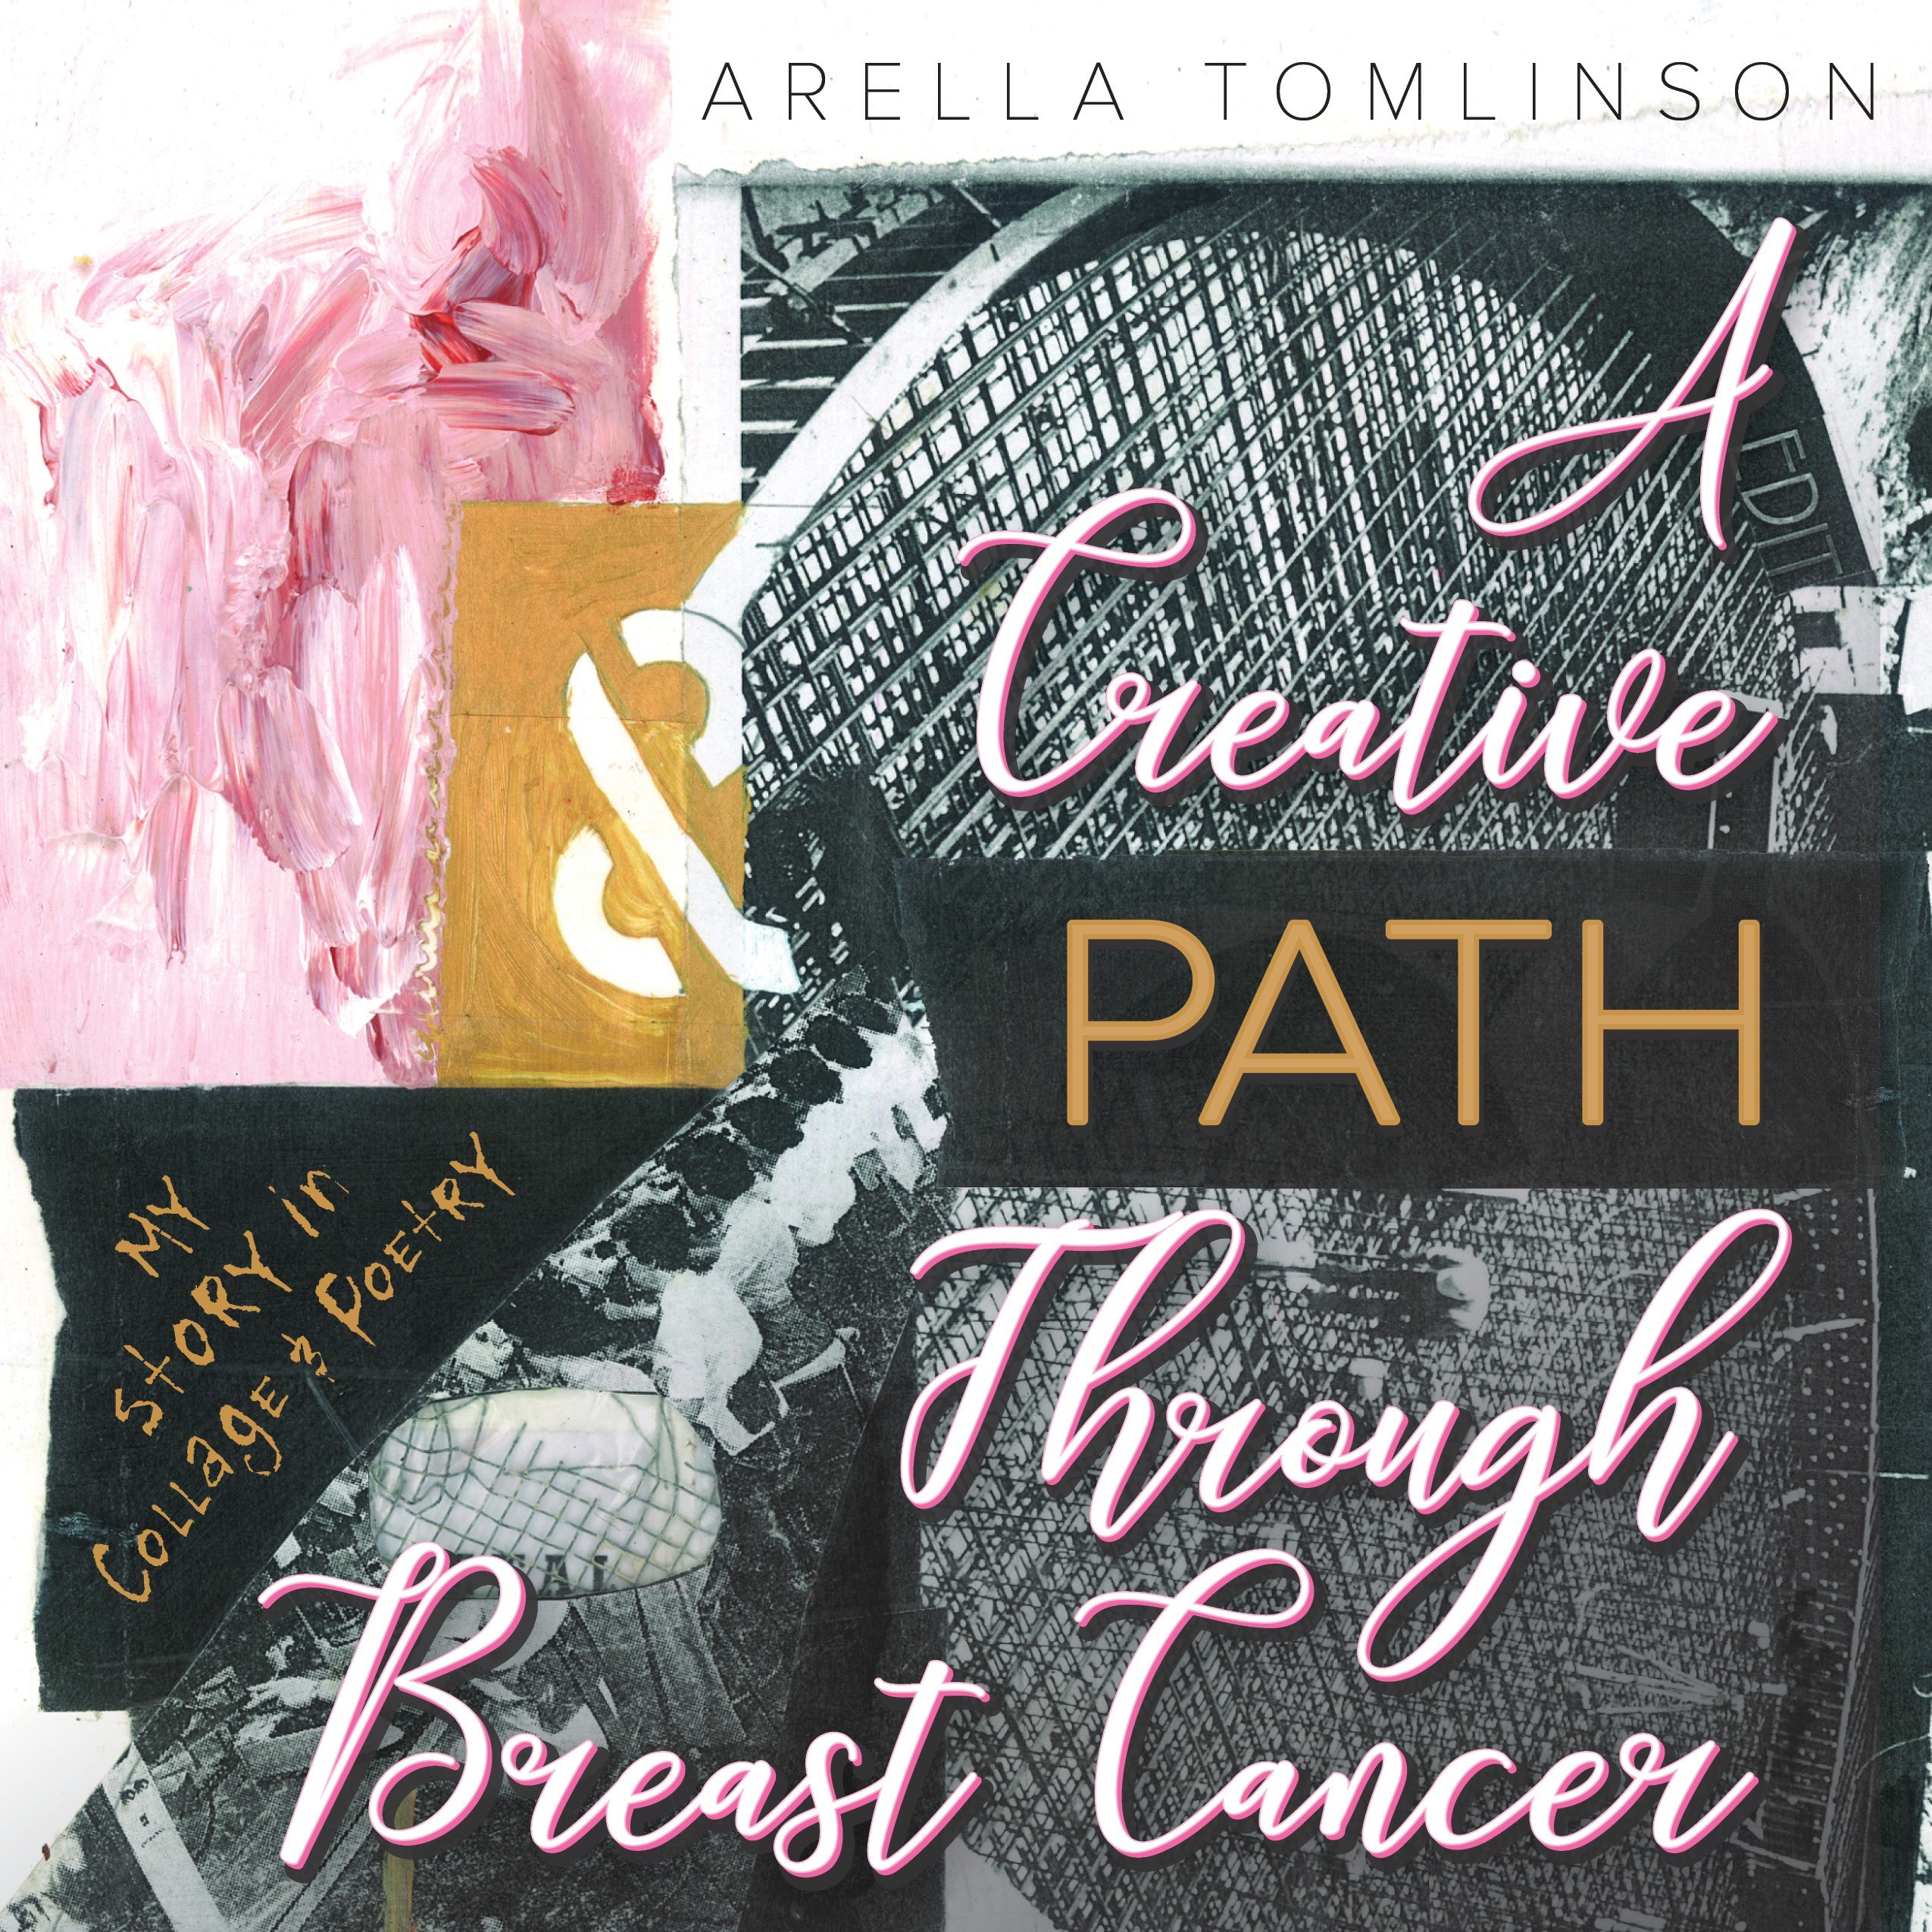 A creative path through breast cancer download rhtxqn